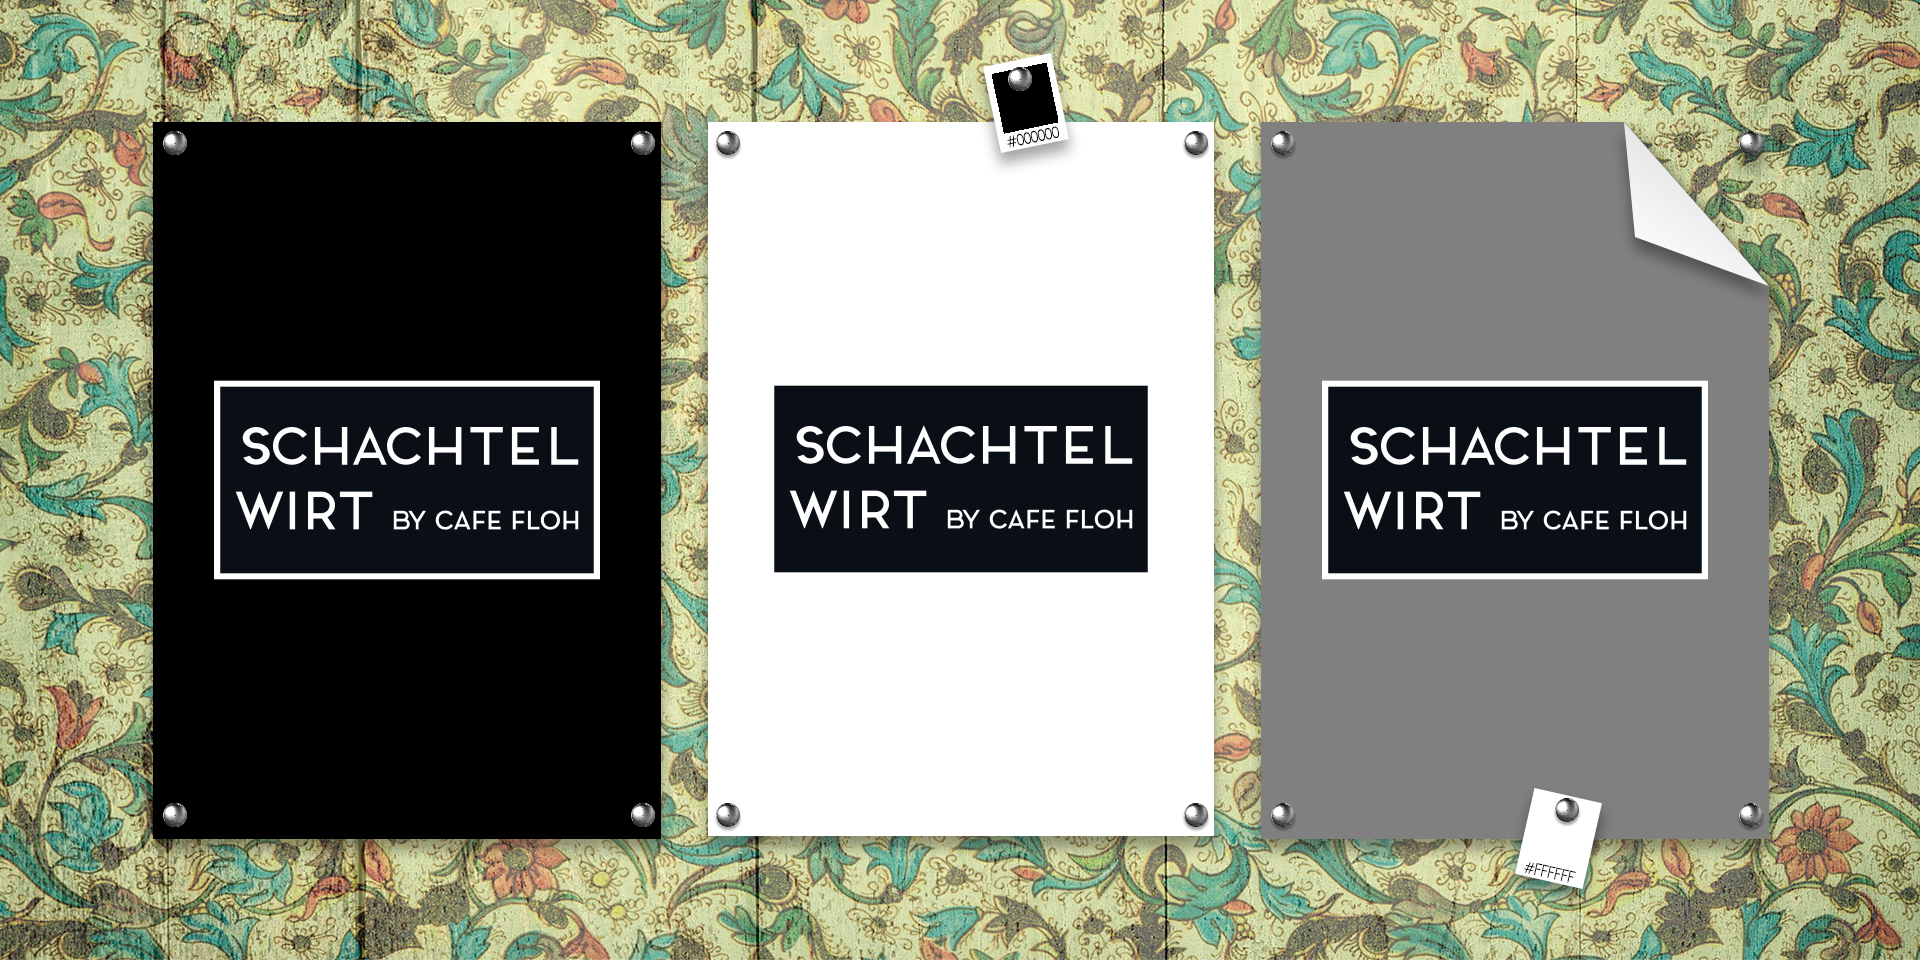 Logoentwicklung Schachtelwirt by Cafe Floh